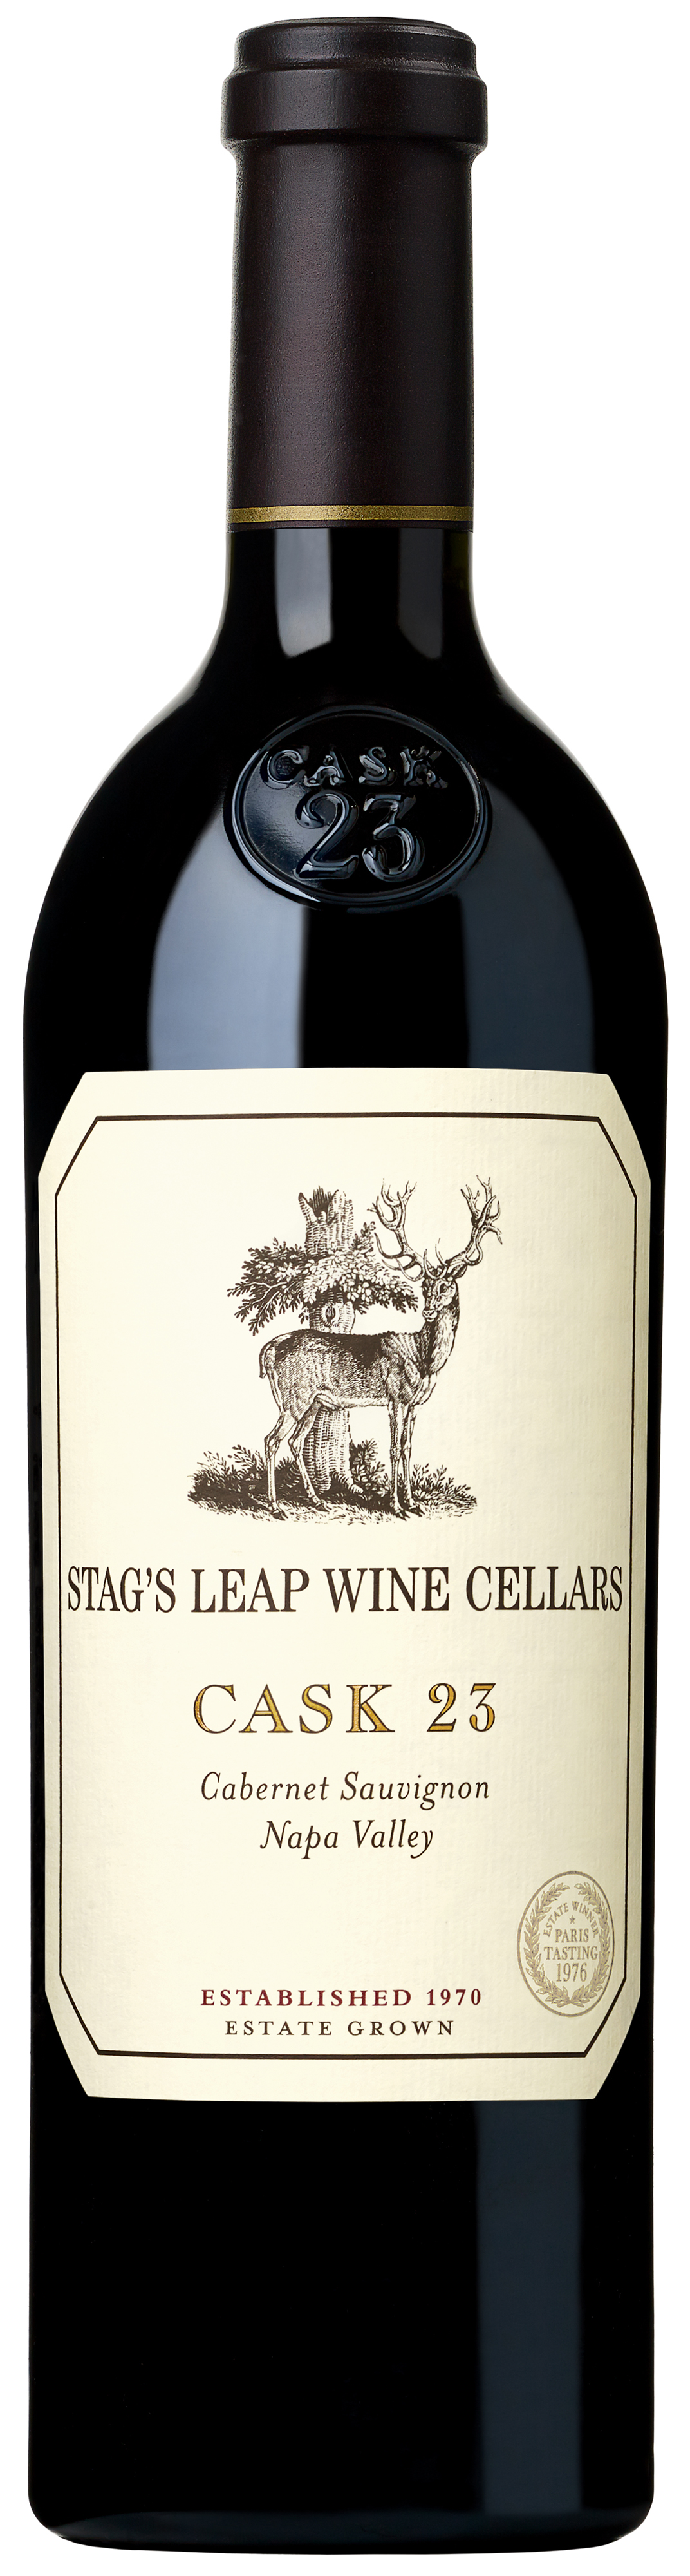 Stag's Leap Wine Cellars Cask 23 Cabernet Sauvignon 2015